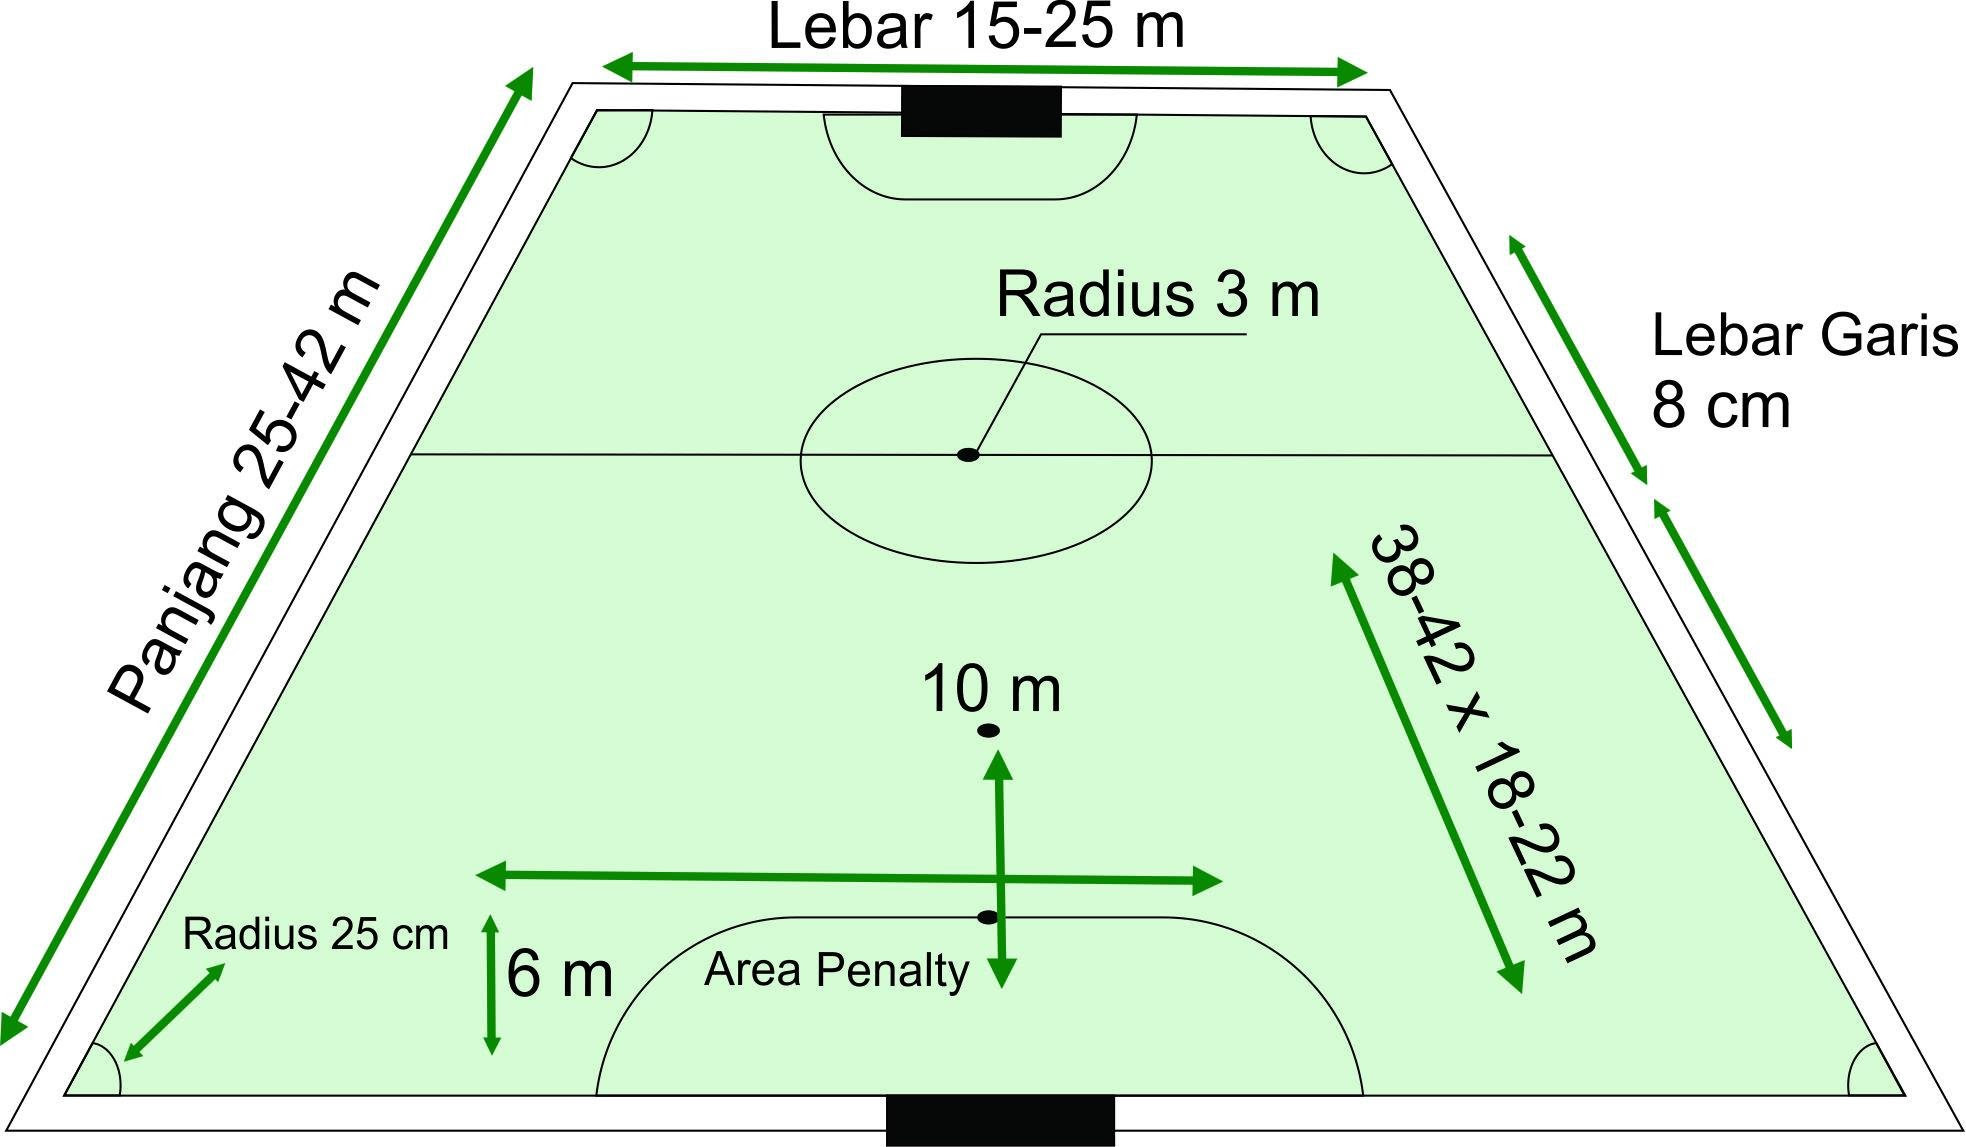 Gambar Lapangan Bola Voli Beserta Ukurannya Dan Posisi Pemainnya jpg (1966x1147)